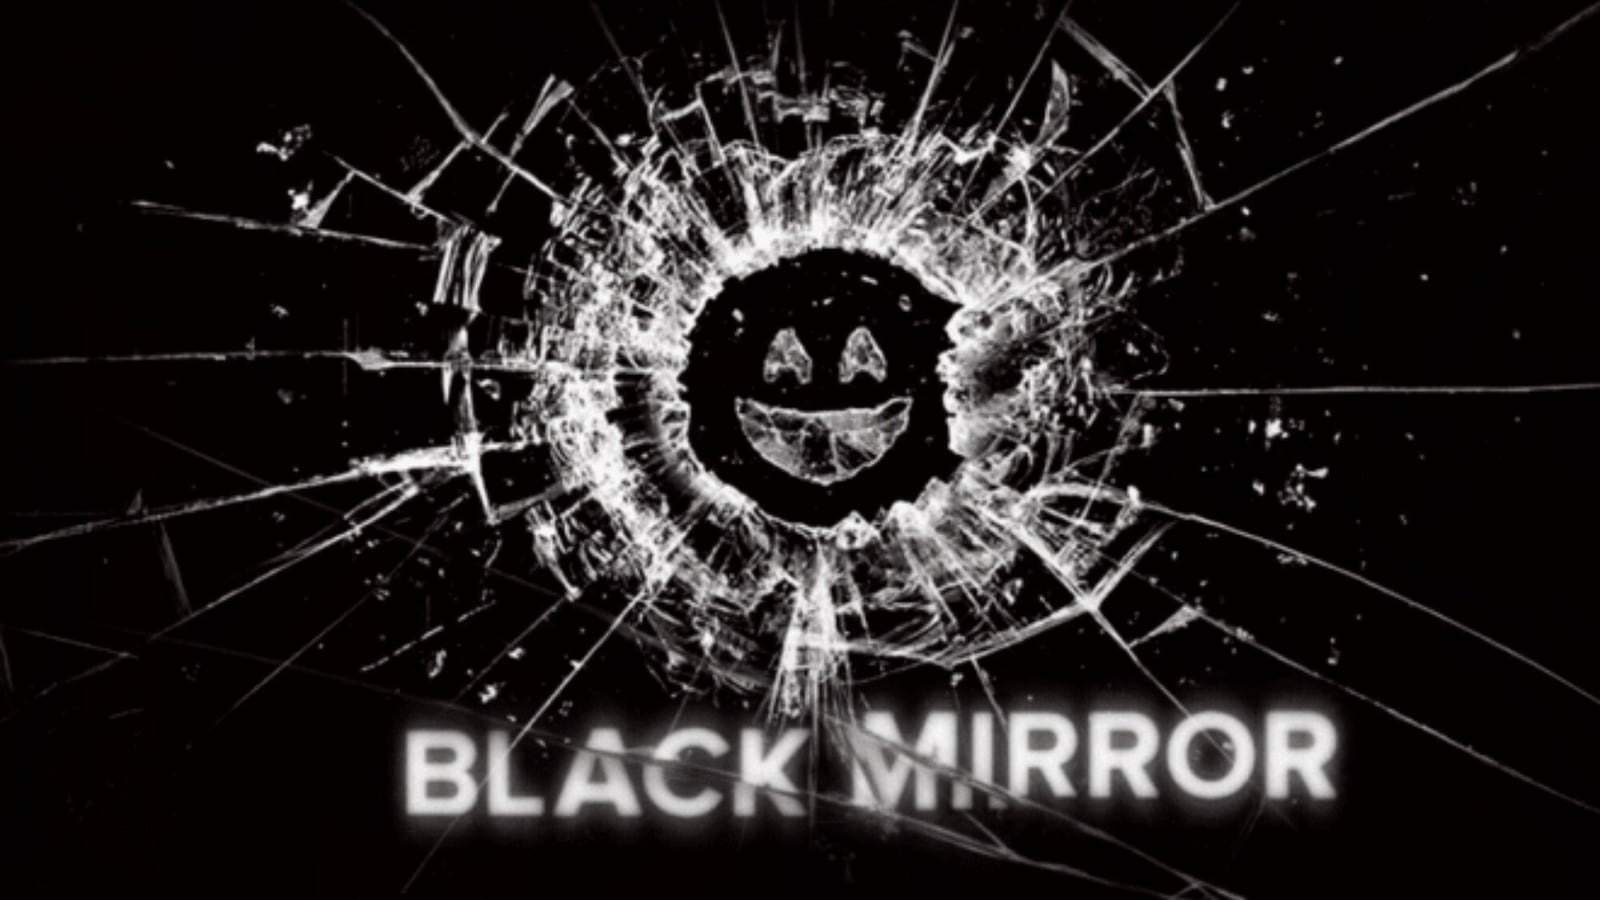 Black Mirror de Netflix regresará con la temporada 6, los fanáticos dicen que 